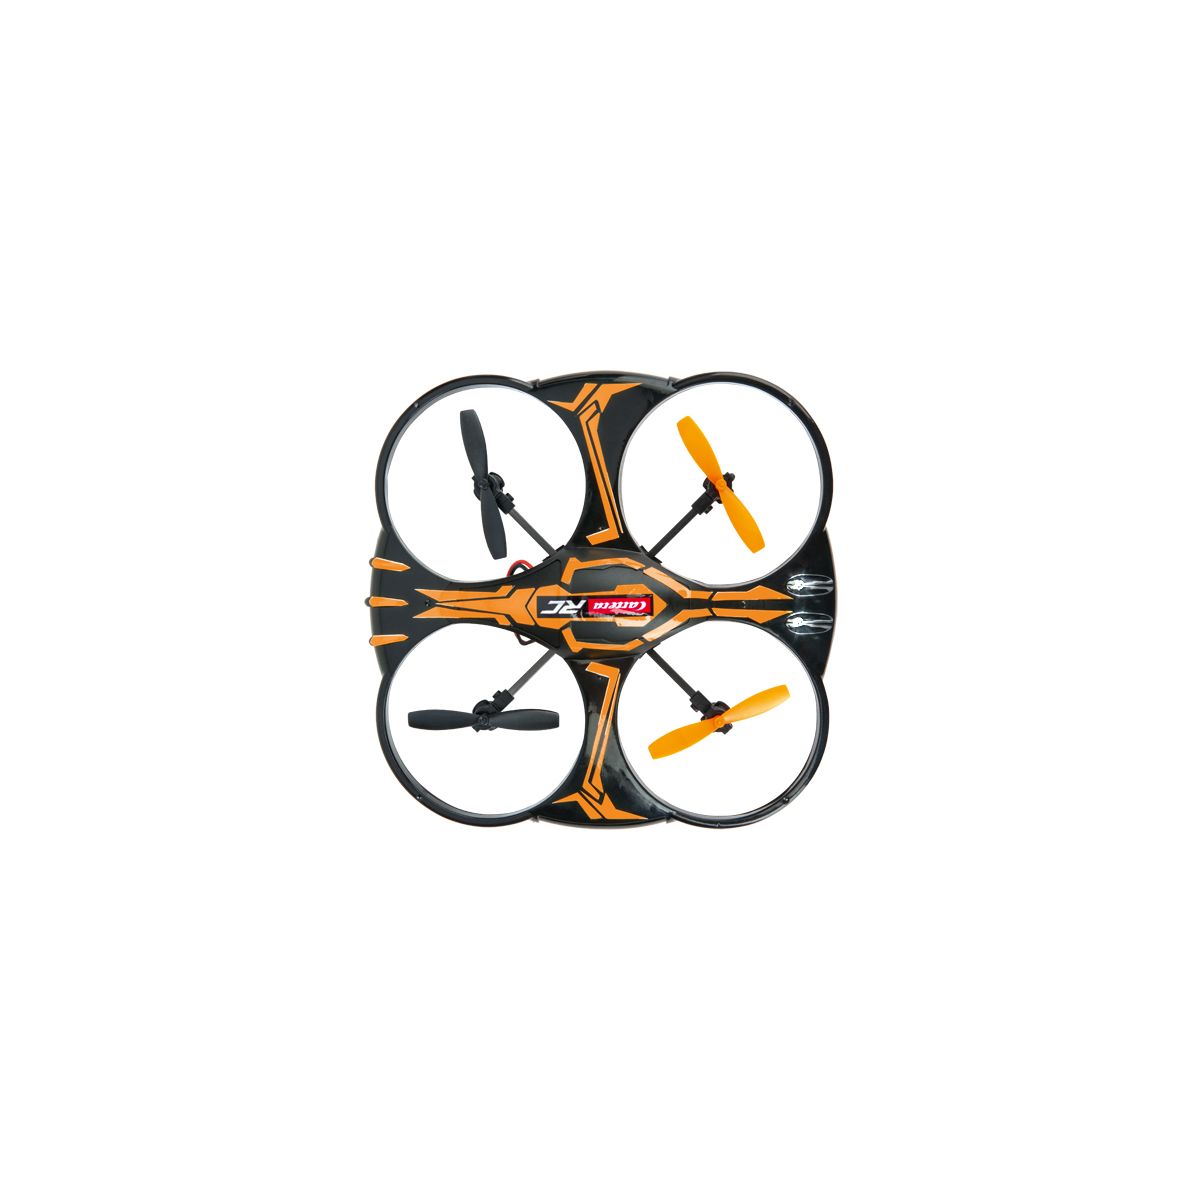 2,4GHz Quadcopter X2